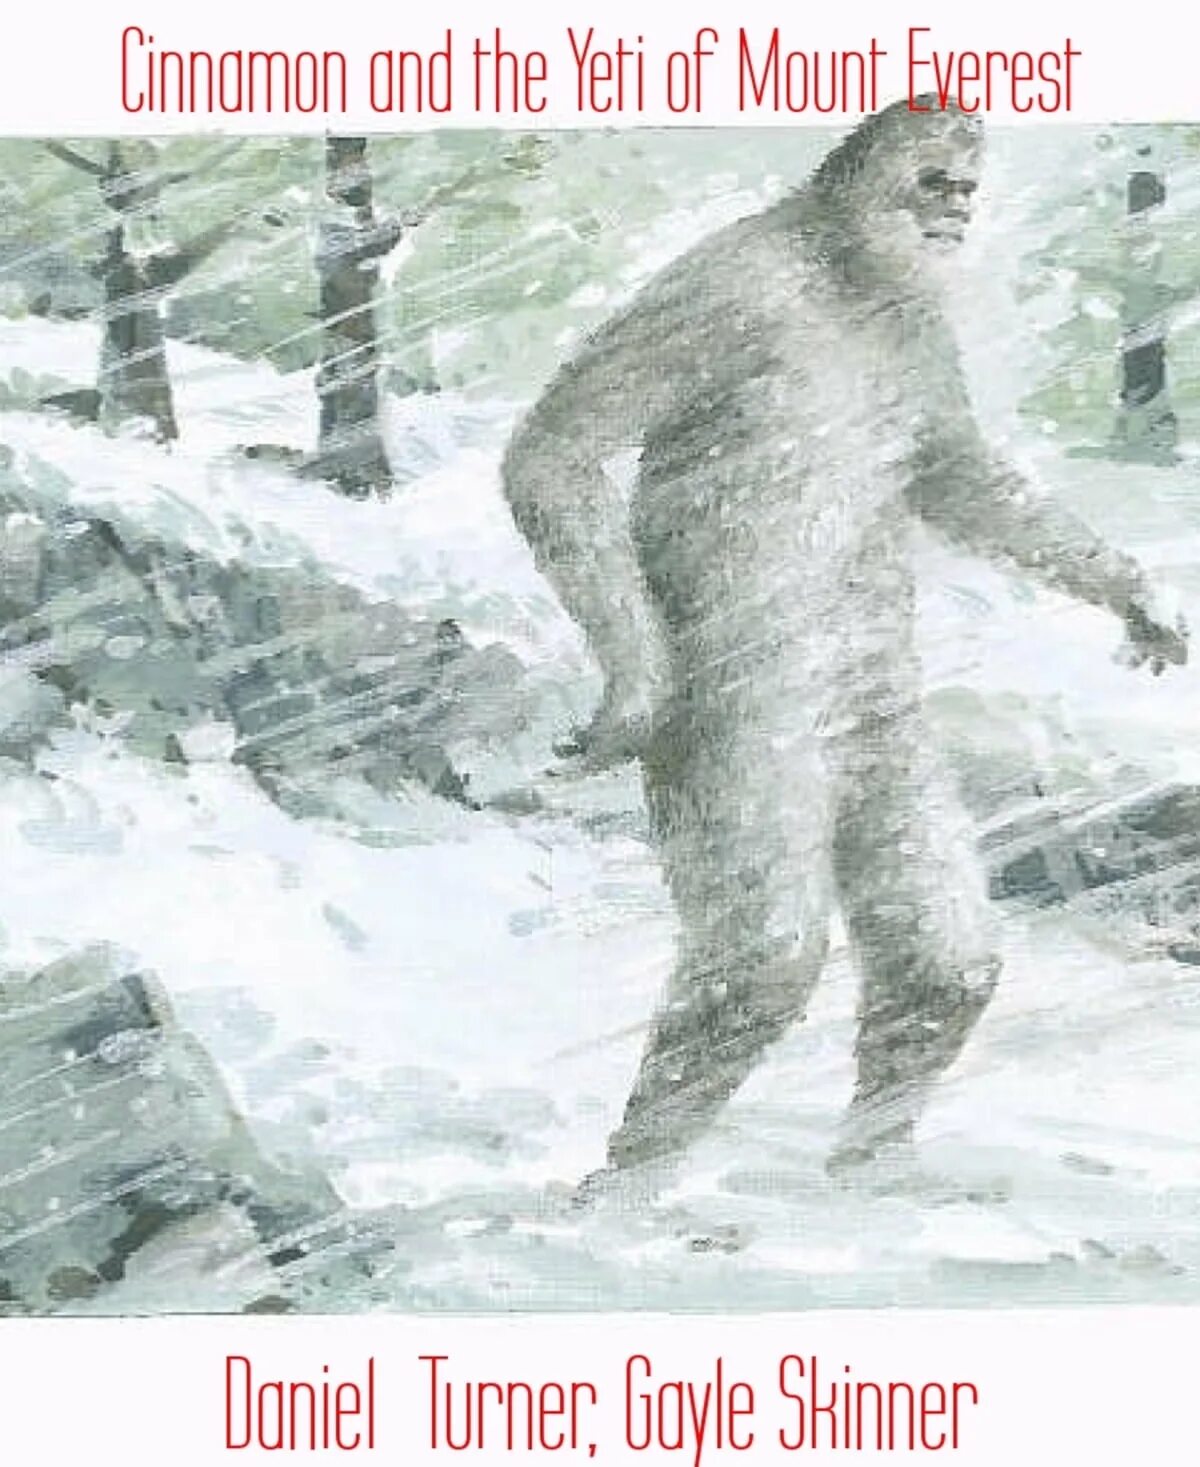 Етти снежный человек. Бигфут етти. Йети проклятие снежного человека 2008.